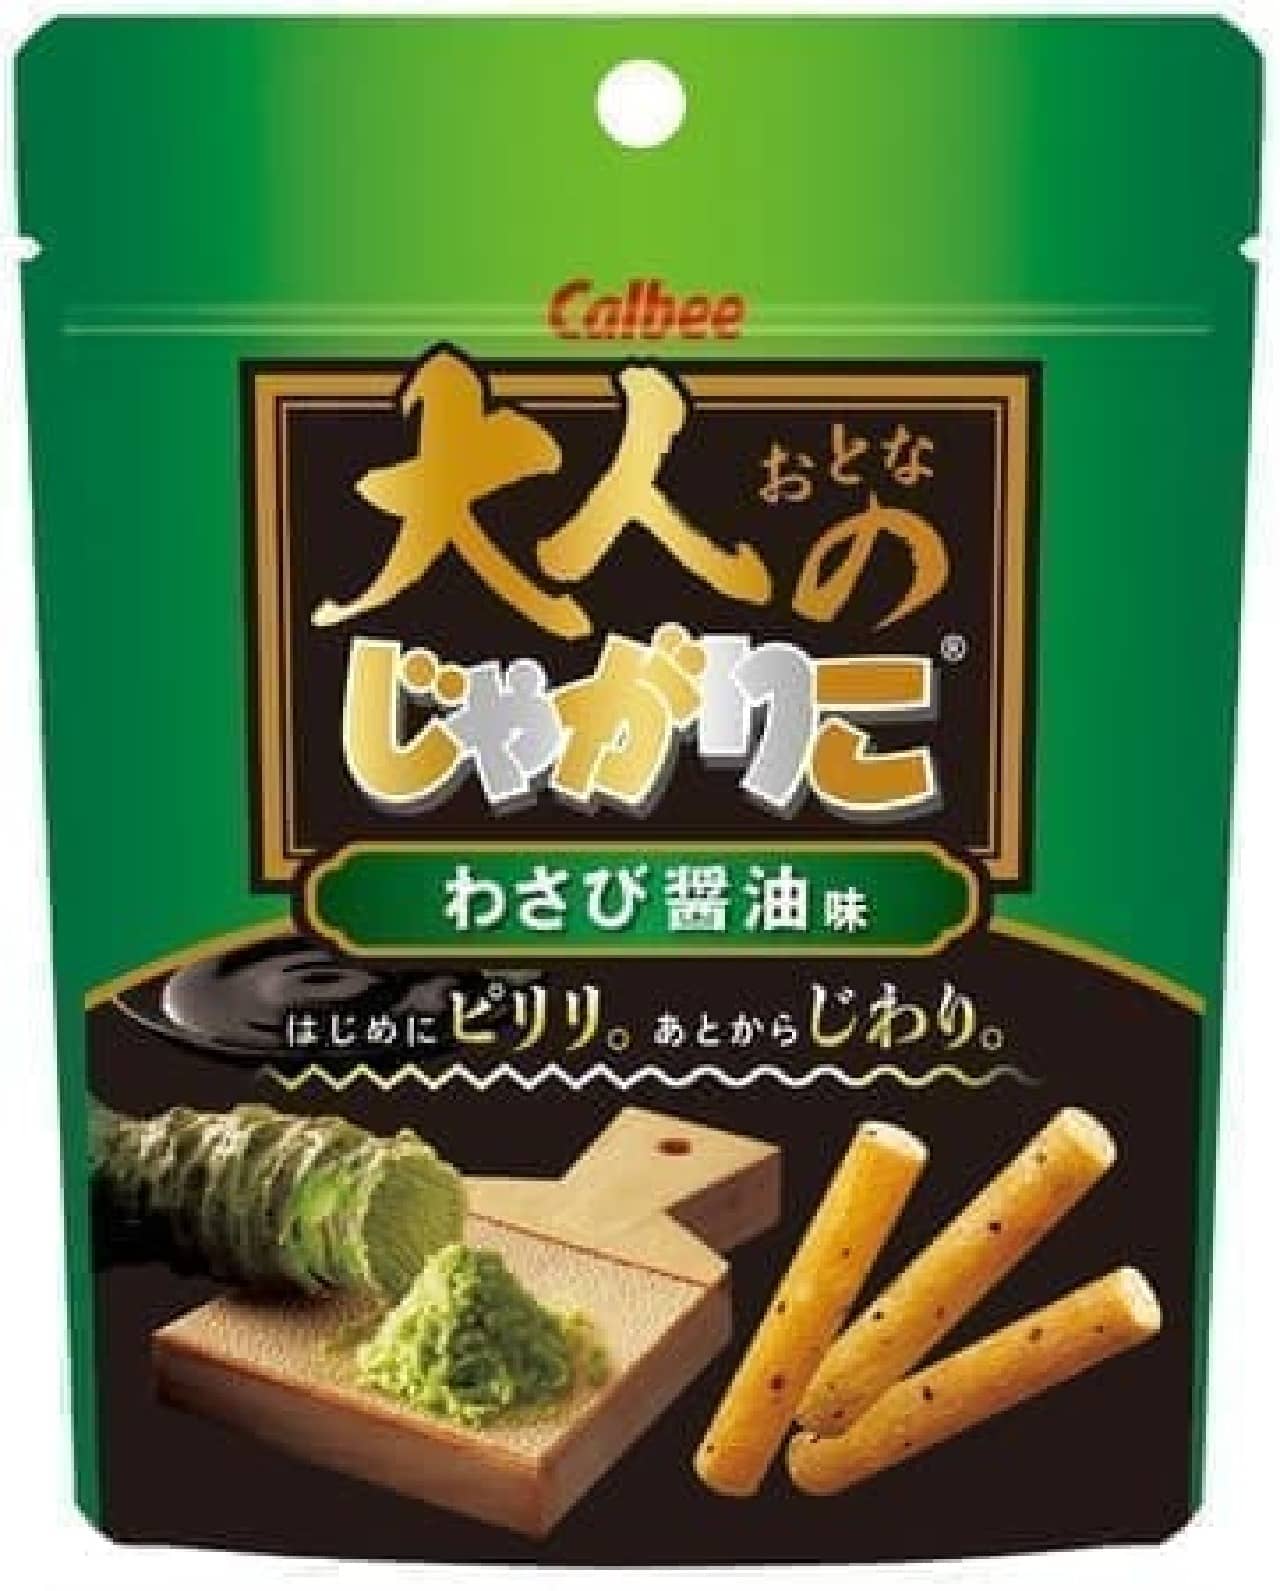 Calbee's "Adult Jagariko Wasabi Soy Sauce Flavor"